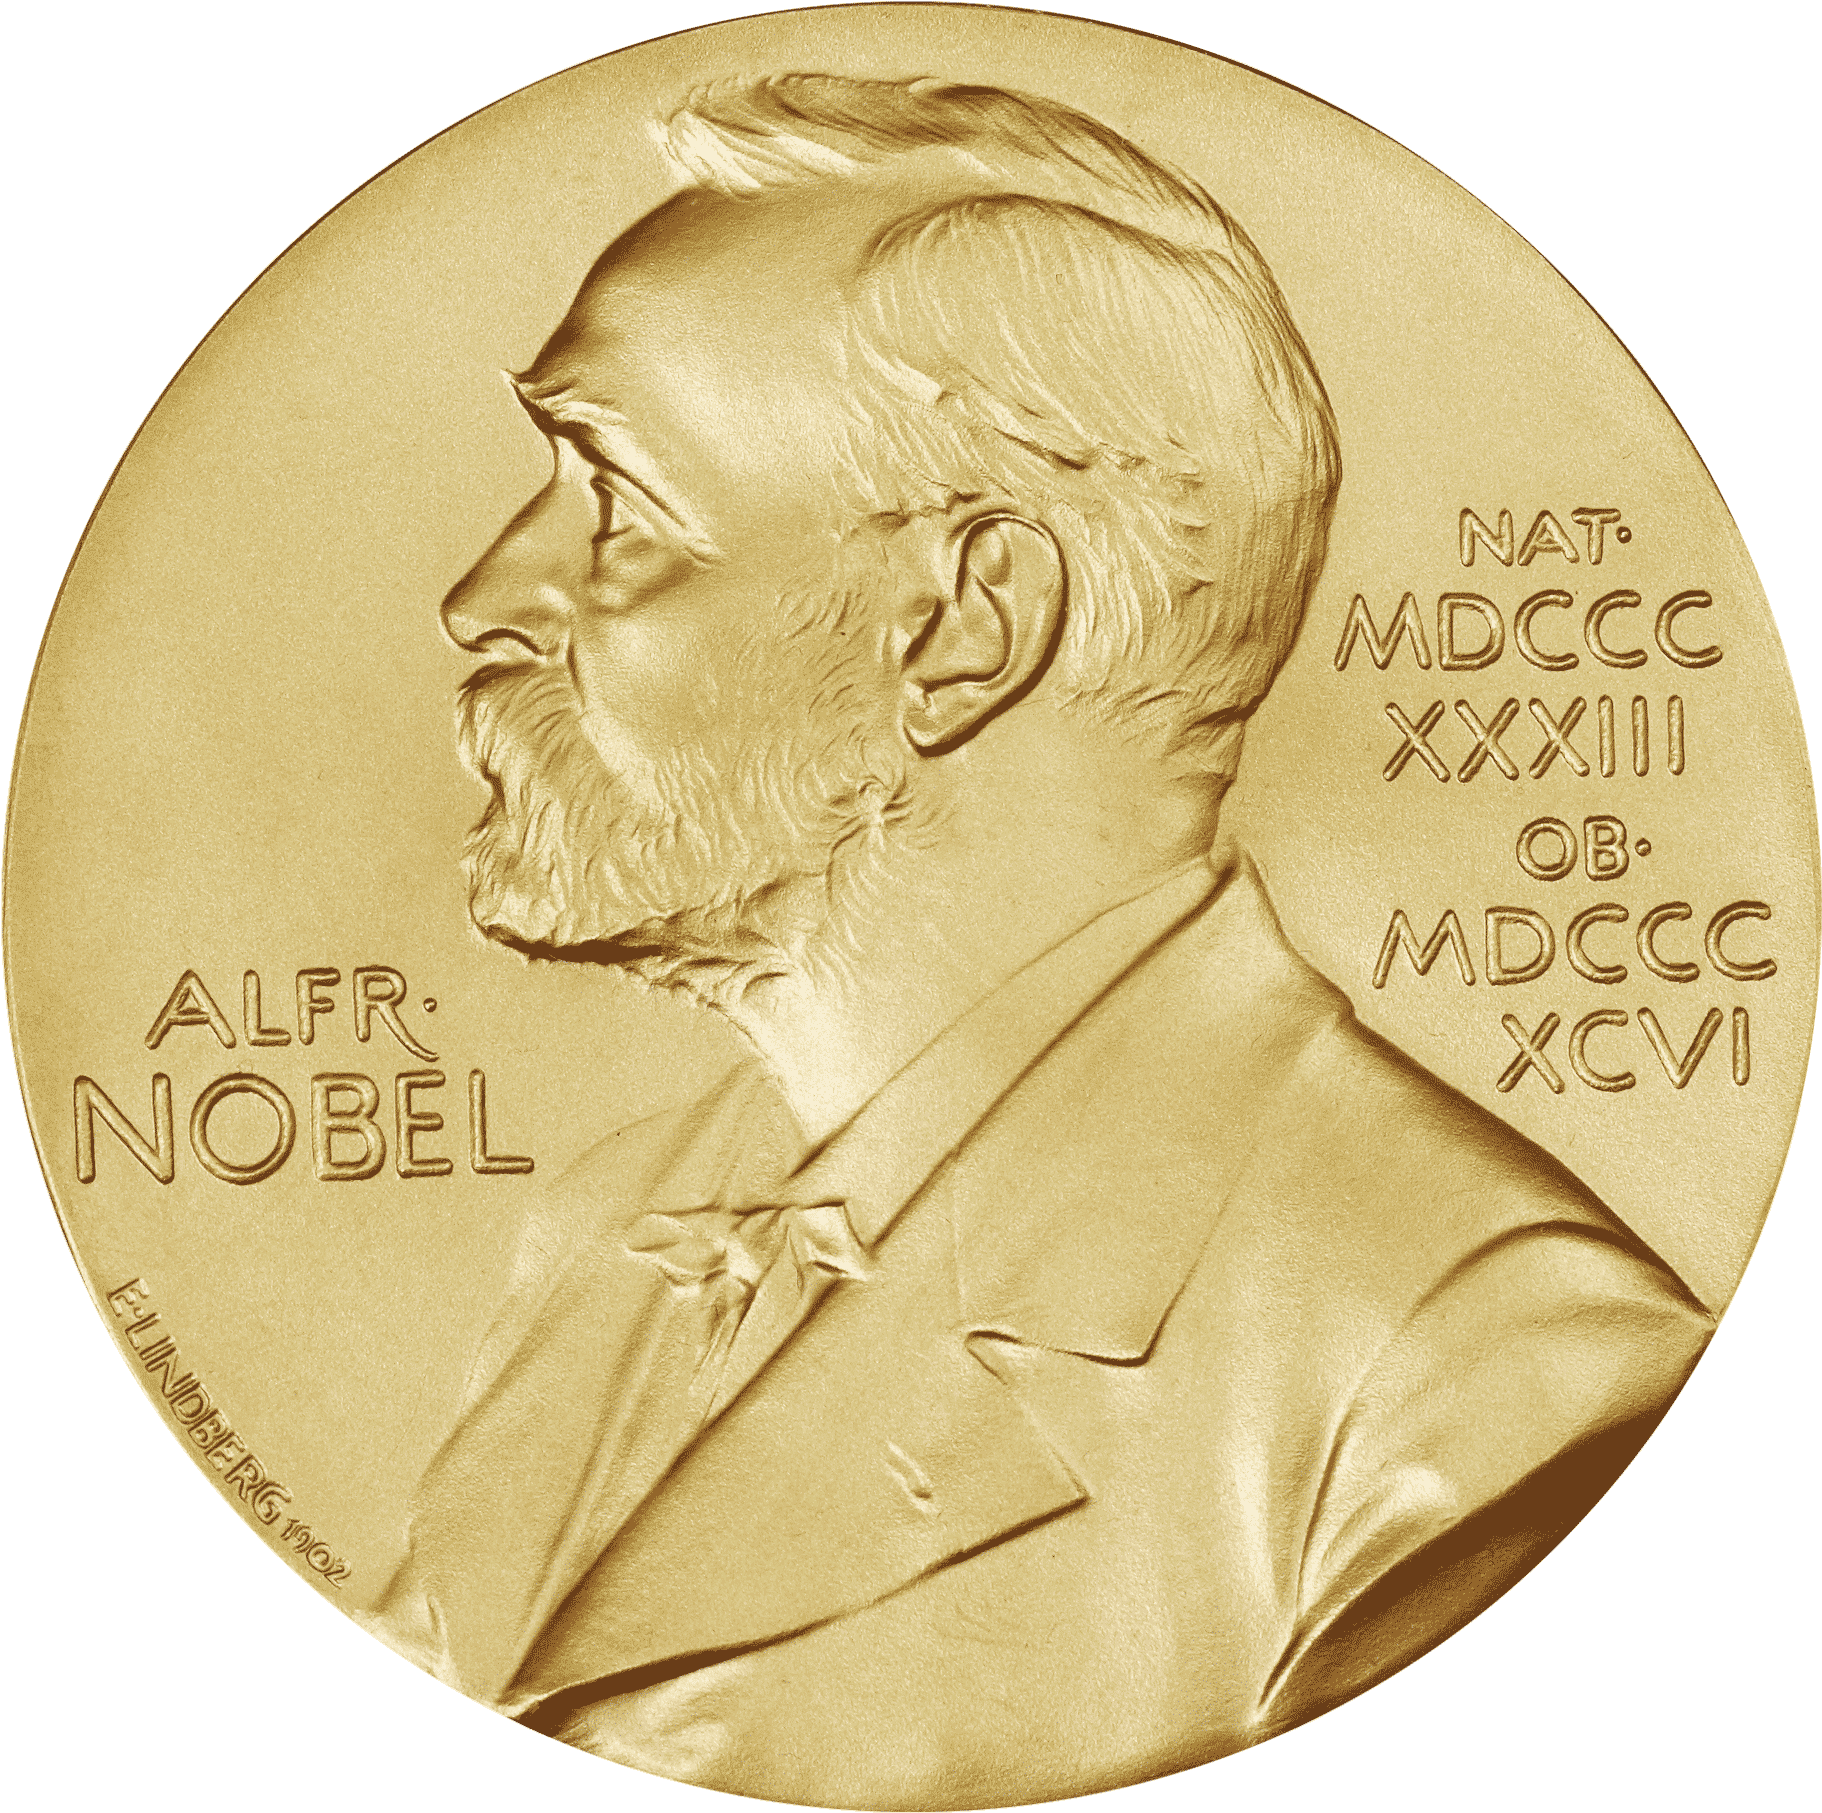 Nobel prize day